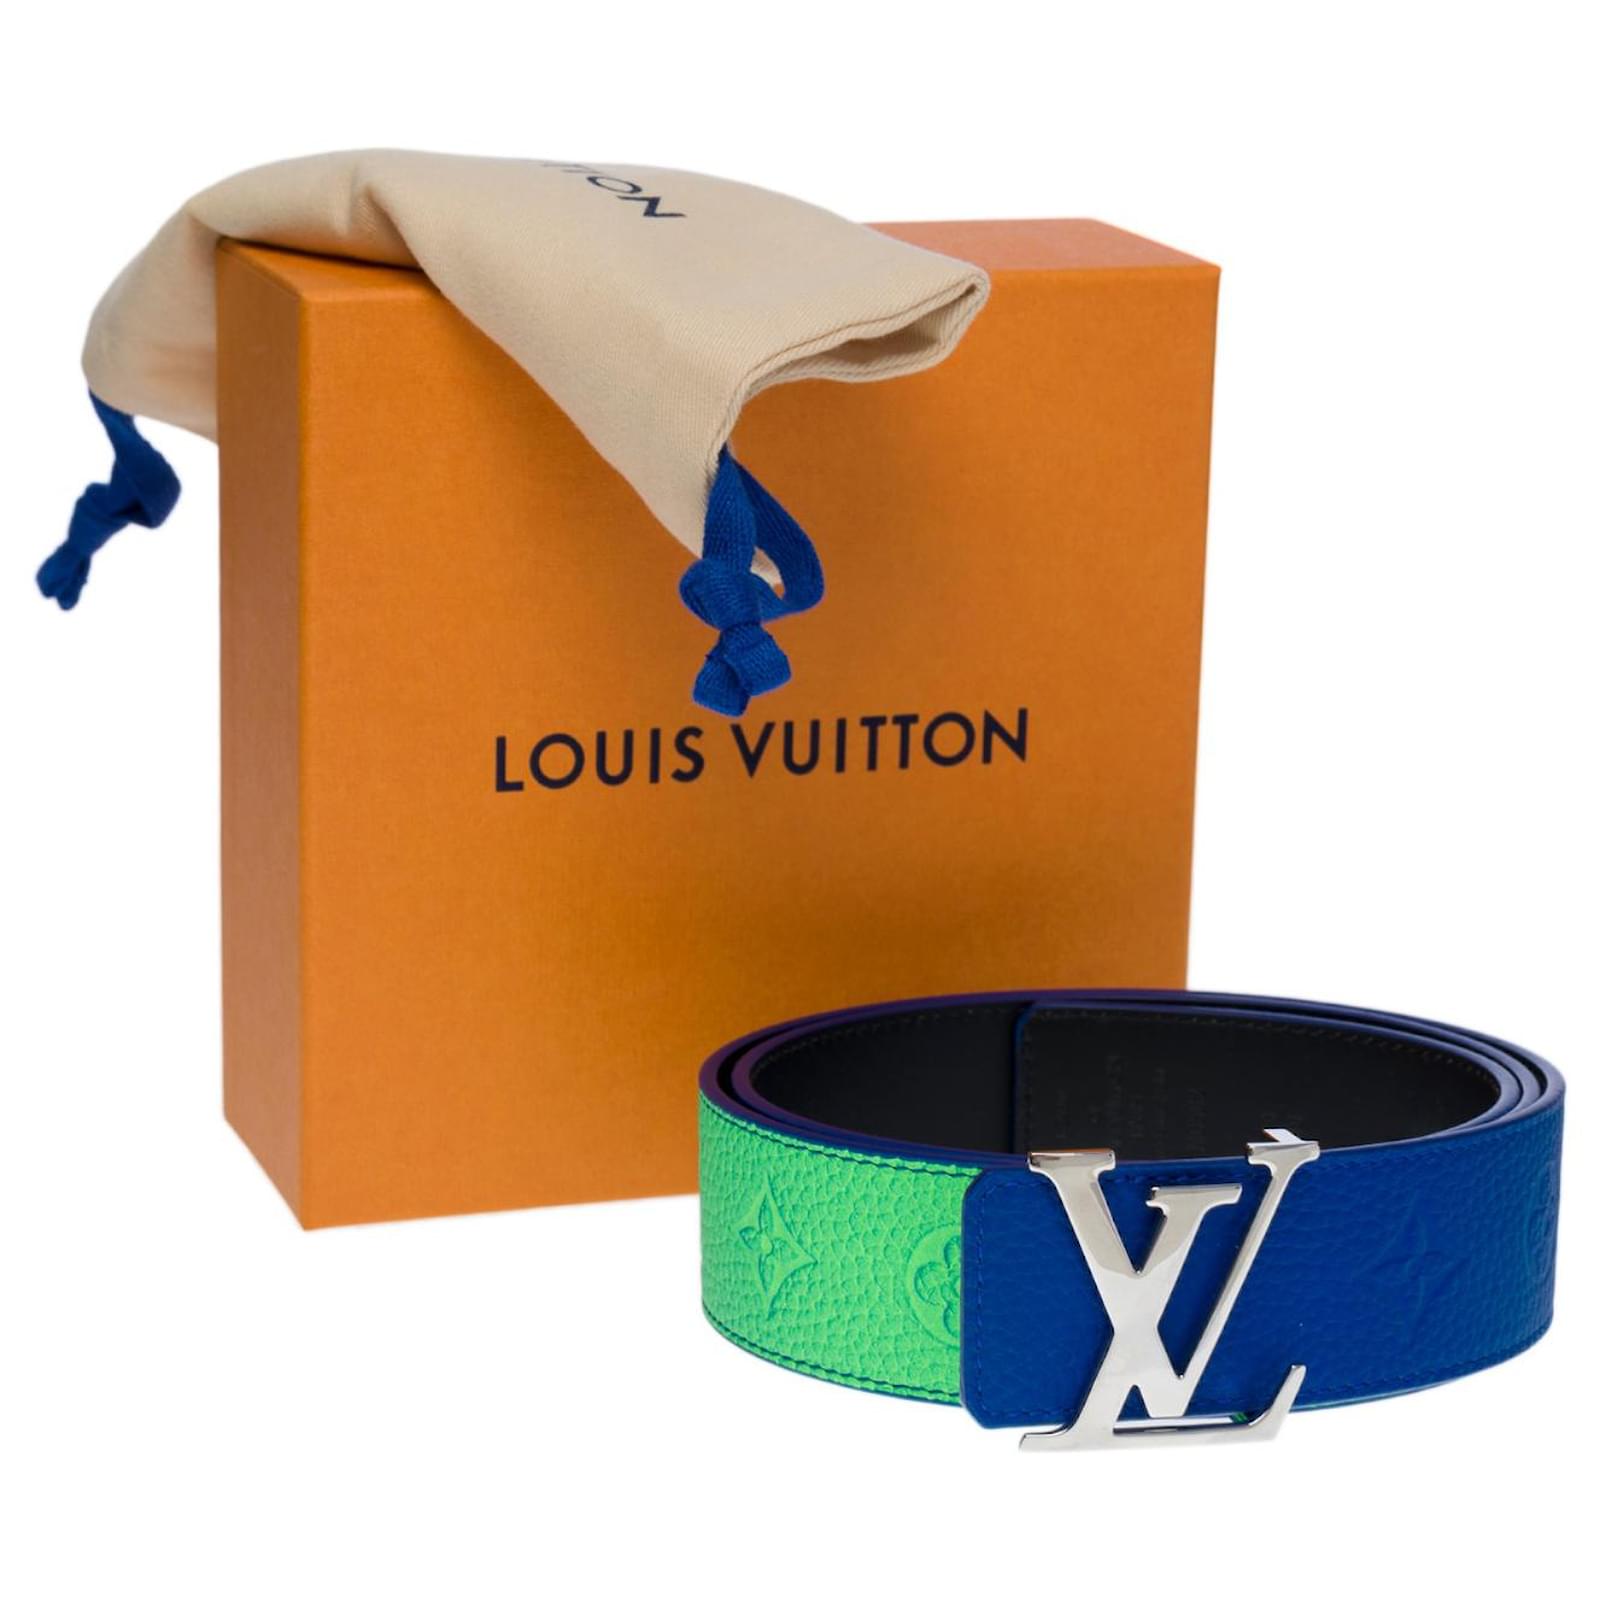 LOUIS VUITTON Taurillon Illusion 40mm LV Initiales Reversible Belt 95 38  Bleu Vert 1285895